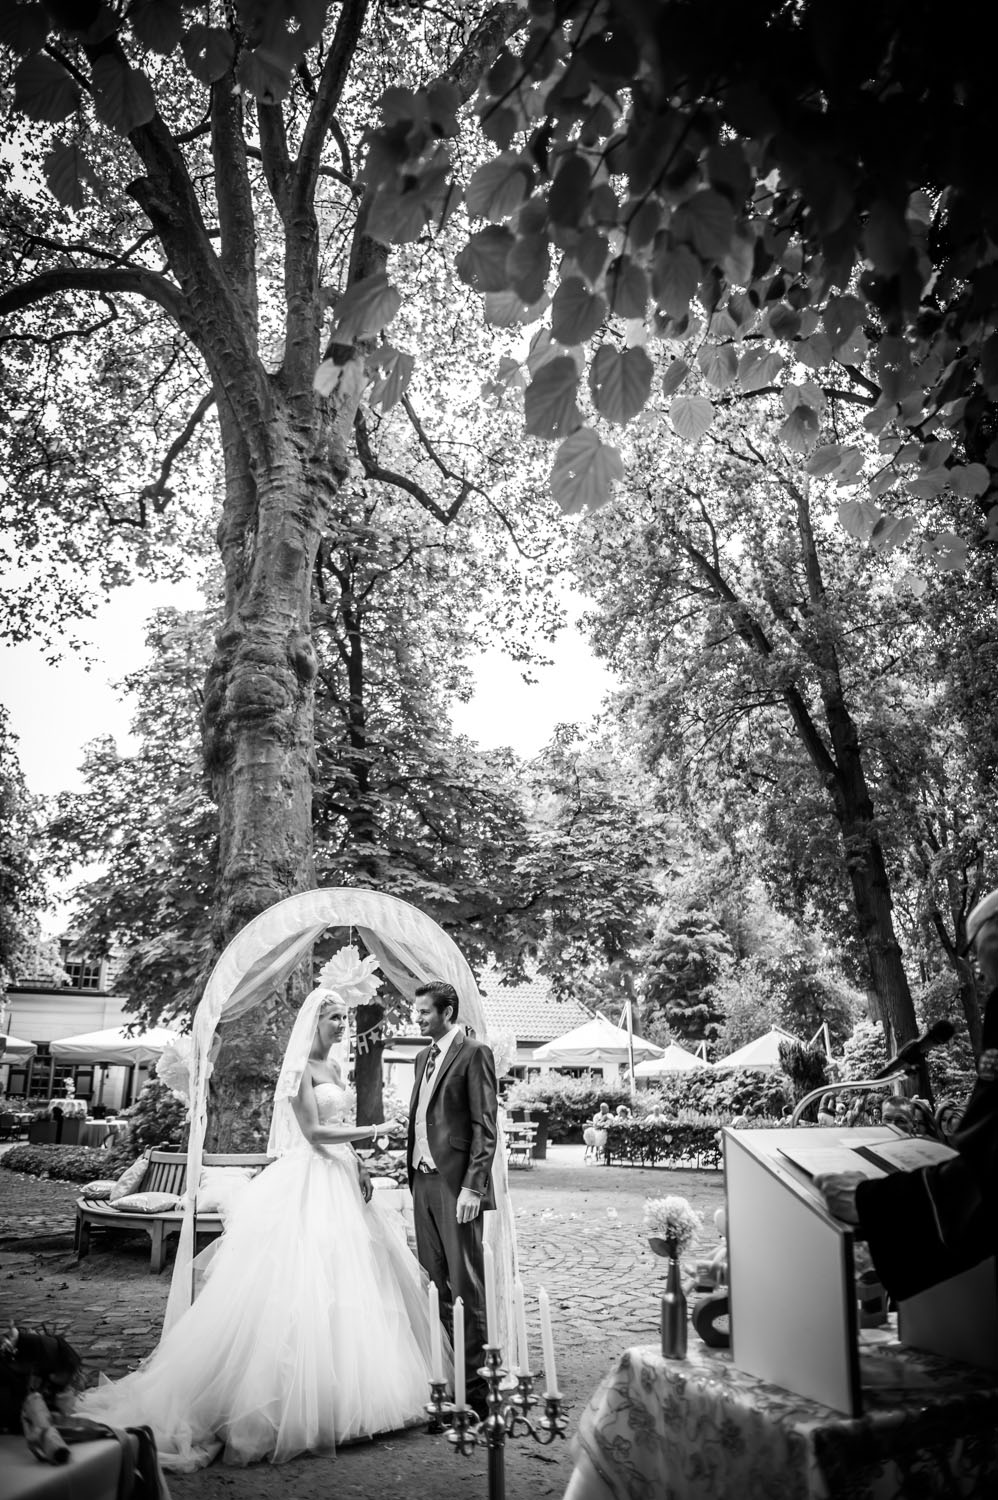 Copy of officieel deel van ceremonie, bij trouwen buiten bij Liesbosch.